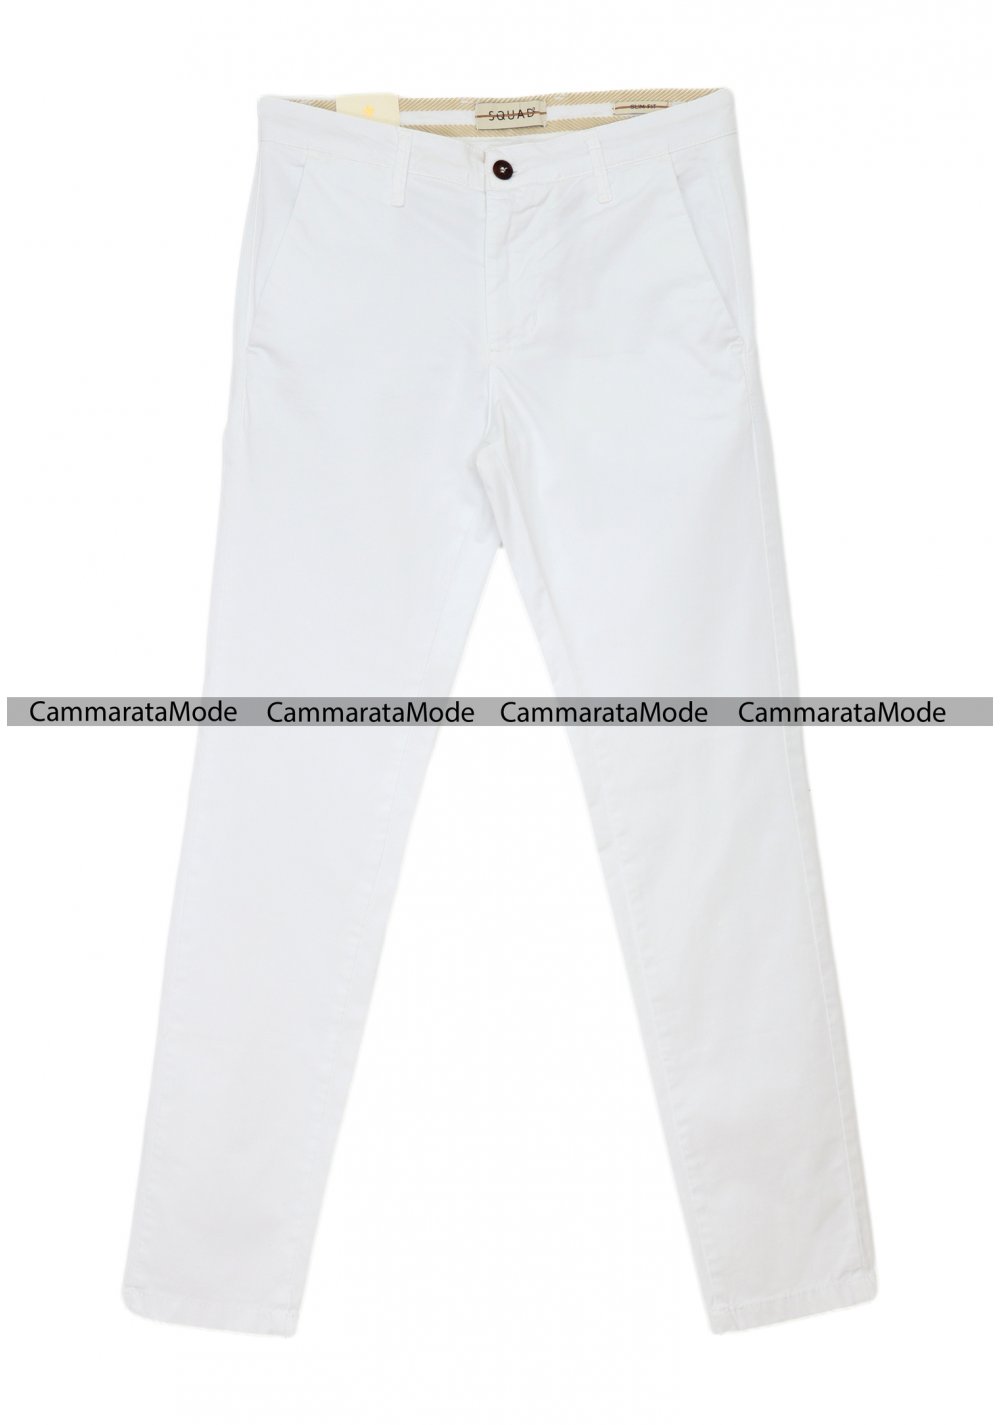 SQUAD2 uomo CUBA - Pantalone bianco tasche america, slim fit cotone elastico